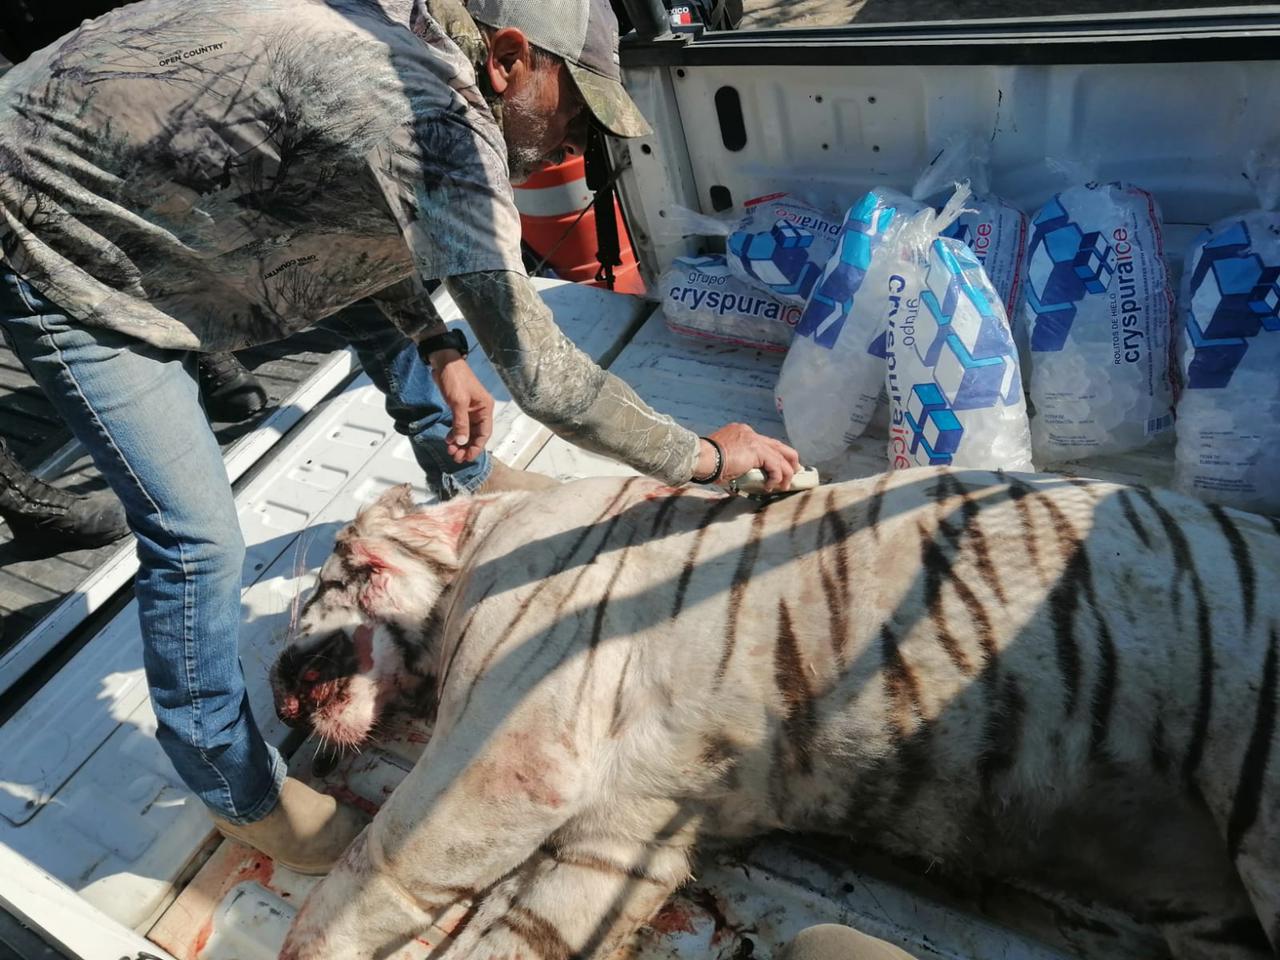 La Procuraduría Federal de Protección al Ambiente levantó una denuncia por la muerte del tigre blanco, registrada en Huimilpan el pasado 20 de marzo. (Especial)